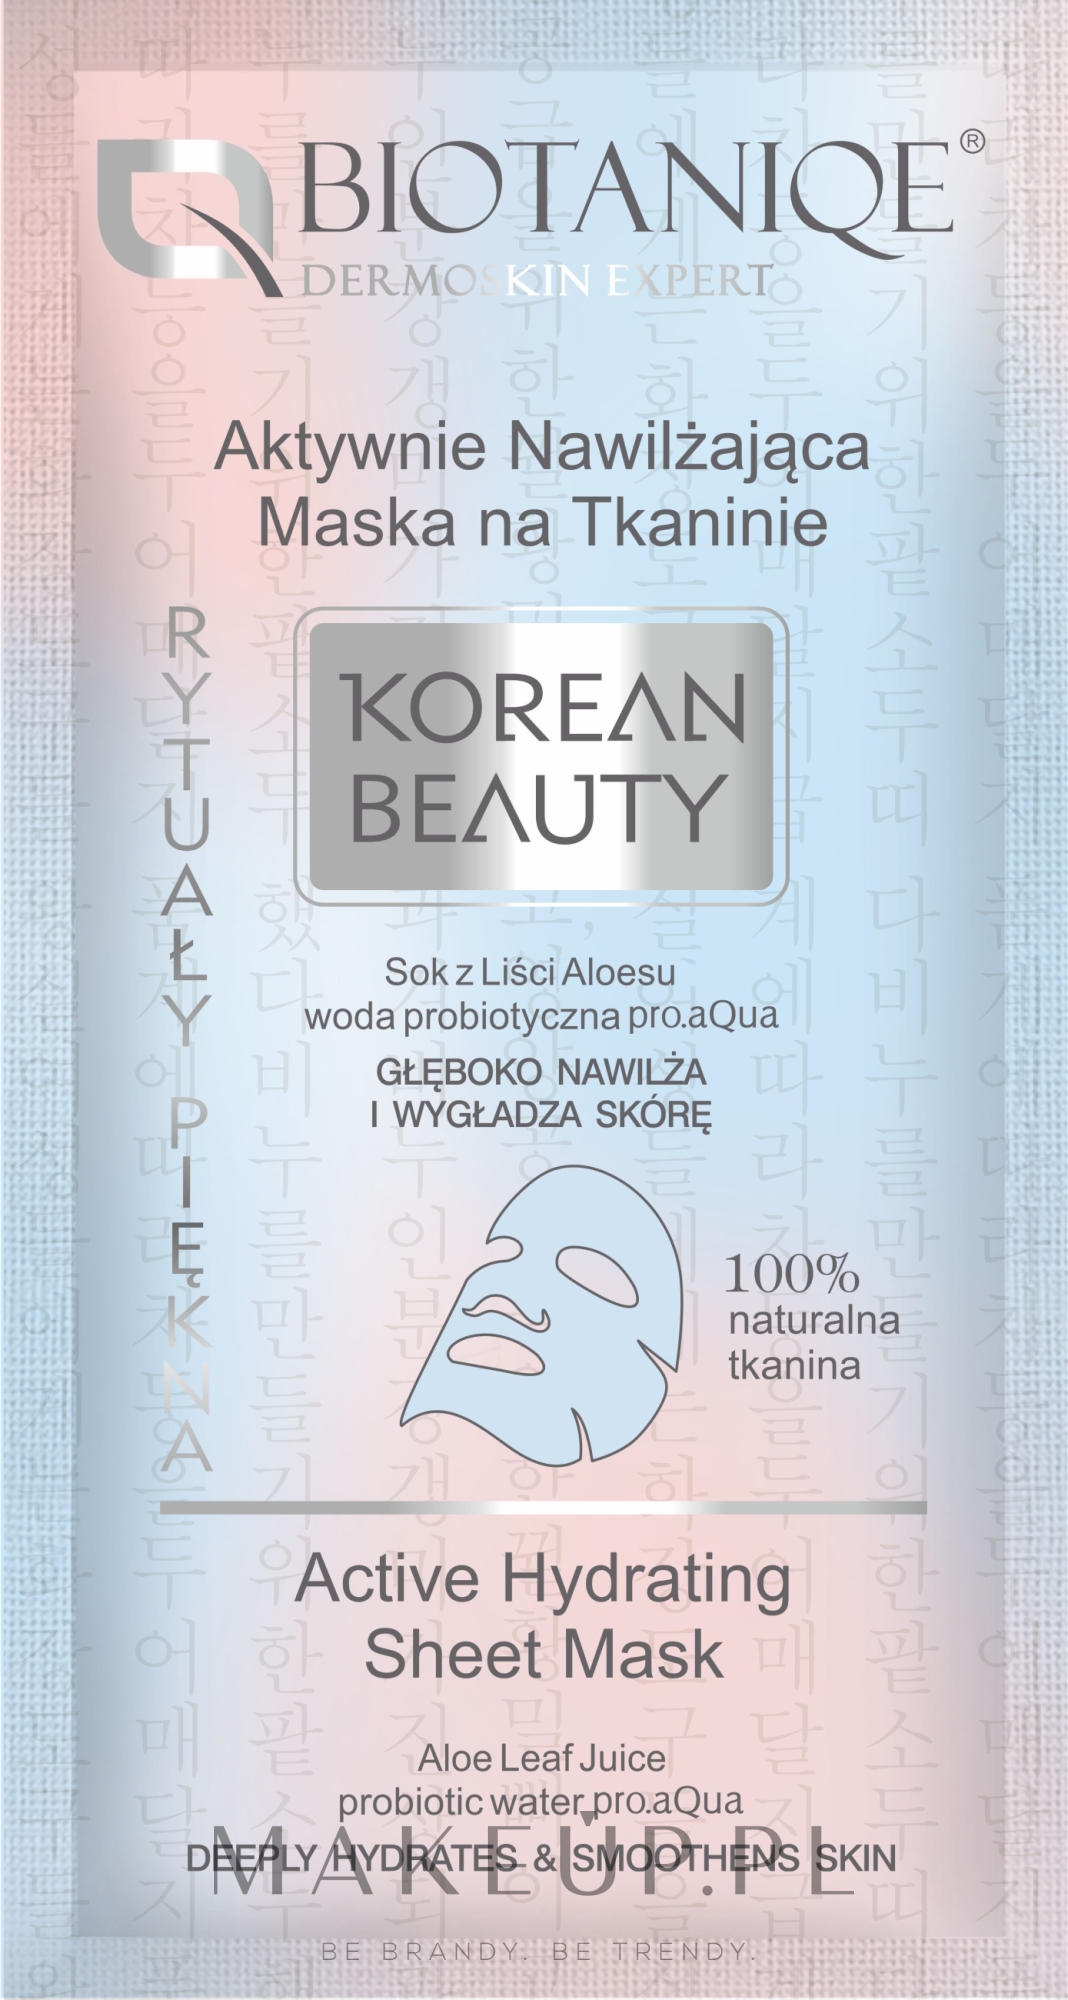 Aktywnie nawilżająca maska na tkaninie do twarzy - Biotaniqe Korean Beauty — Zdjęcie 15 ml